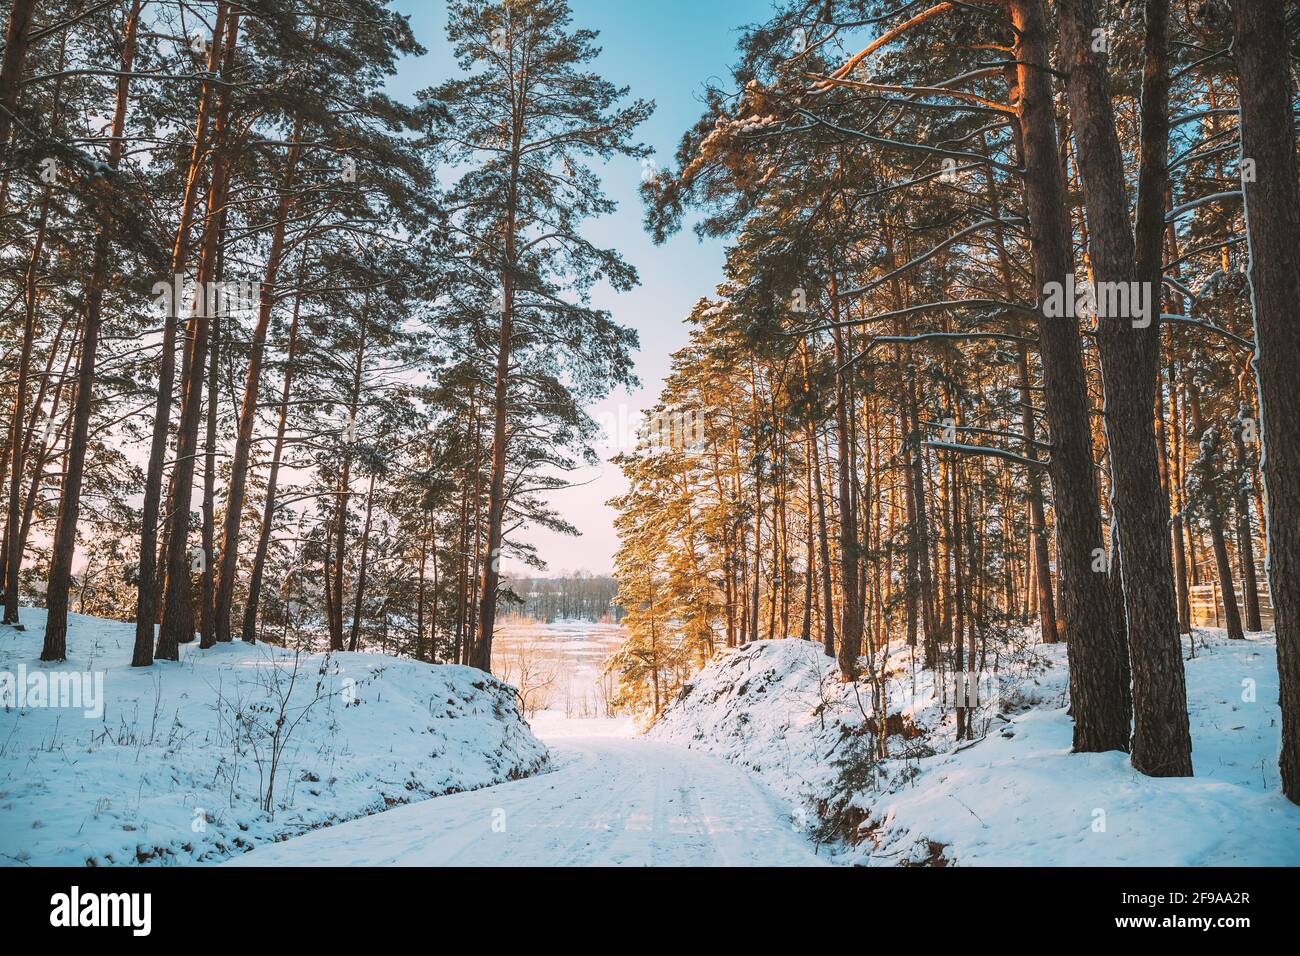 Route de campagne à travers la forêt de pins d'hiver de Snowy. Paysage de forêt de conifères enneigés d'hiver. Beaux bois en paysage forestier Banque D'Images